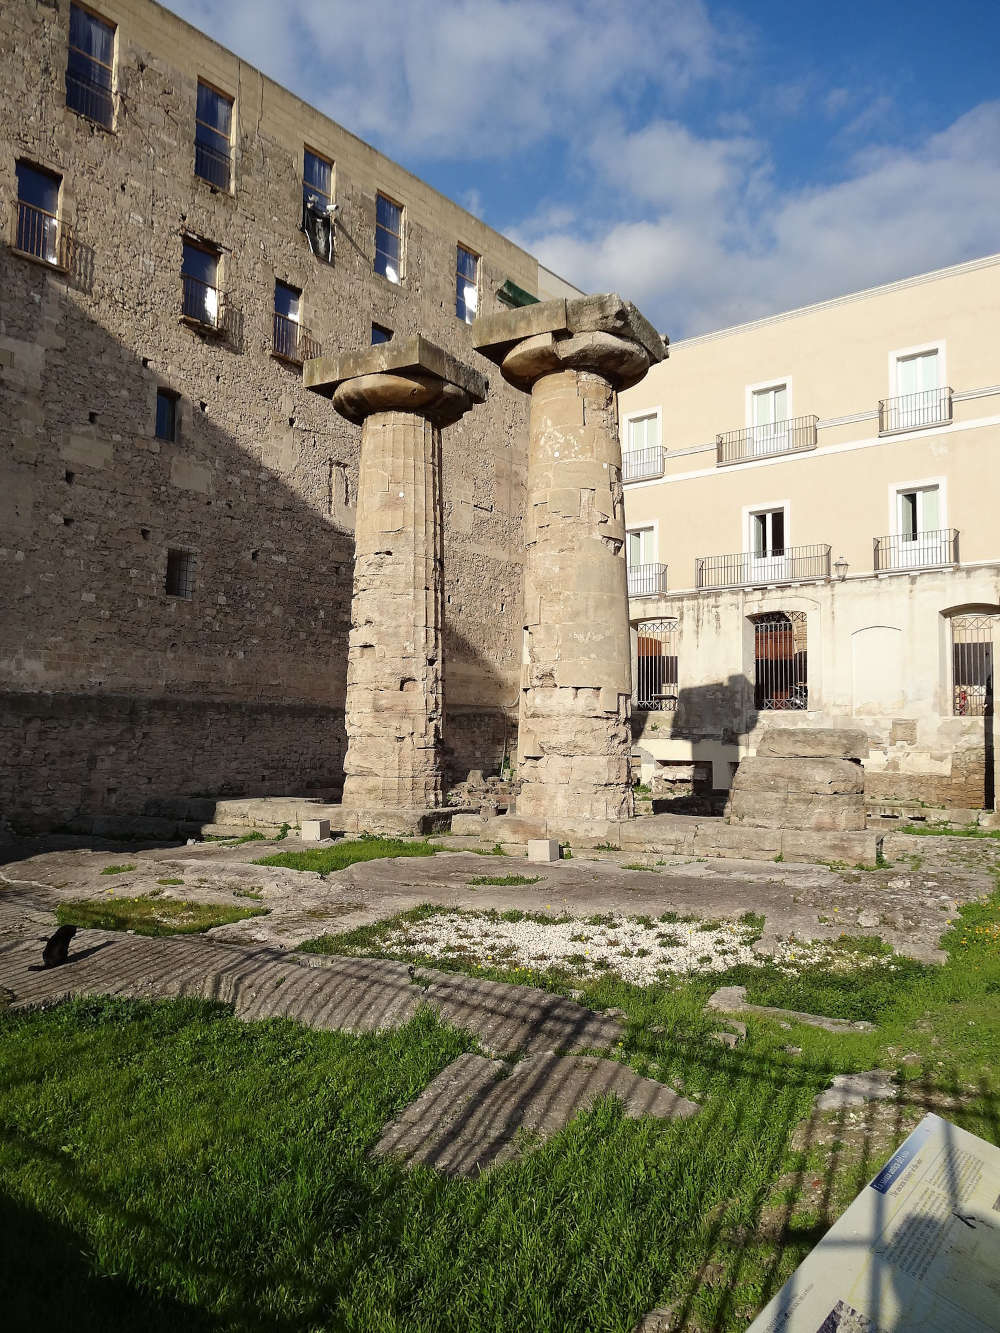 The Temple of Poseidon in Taranto